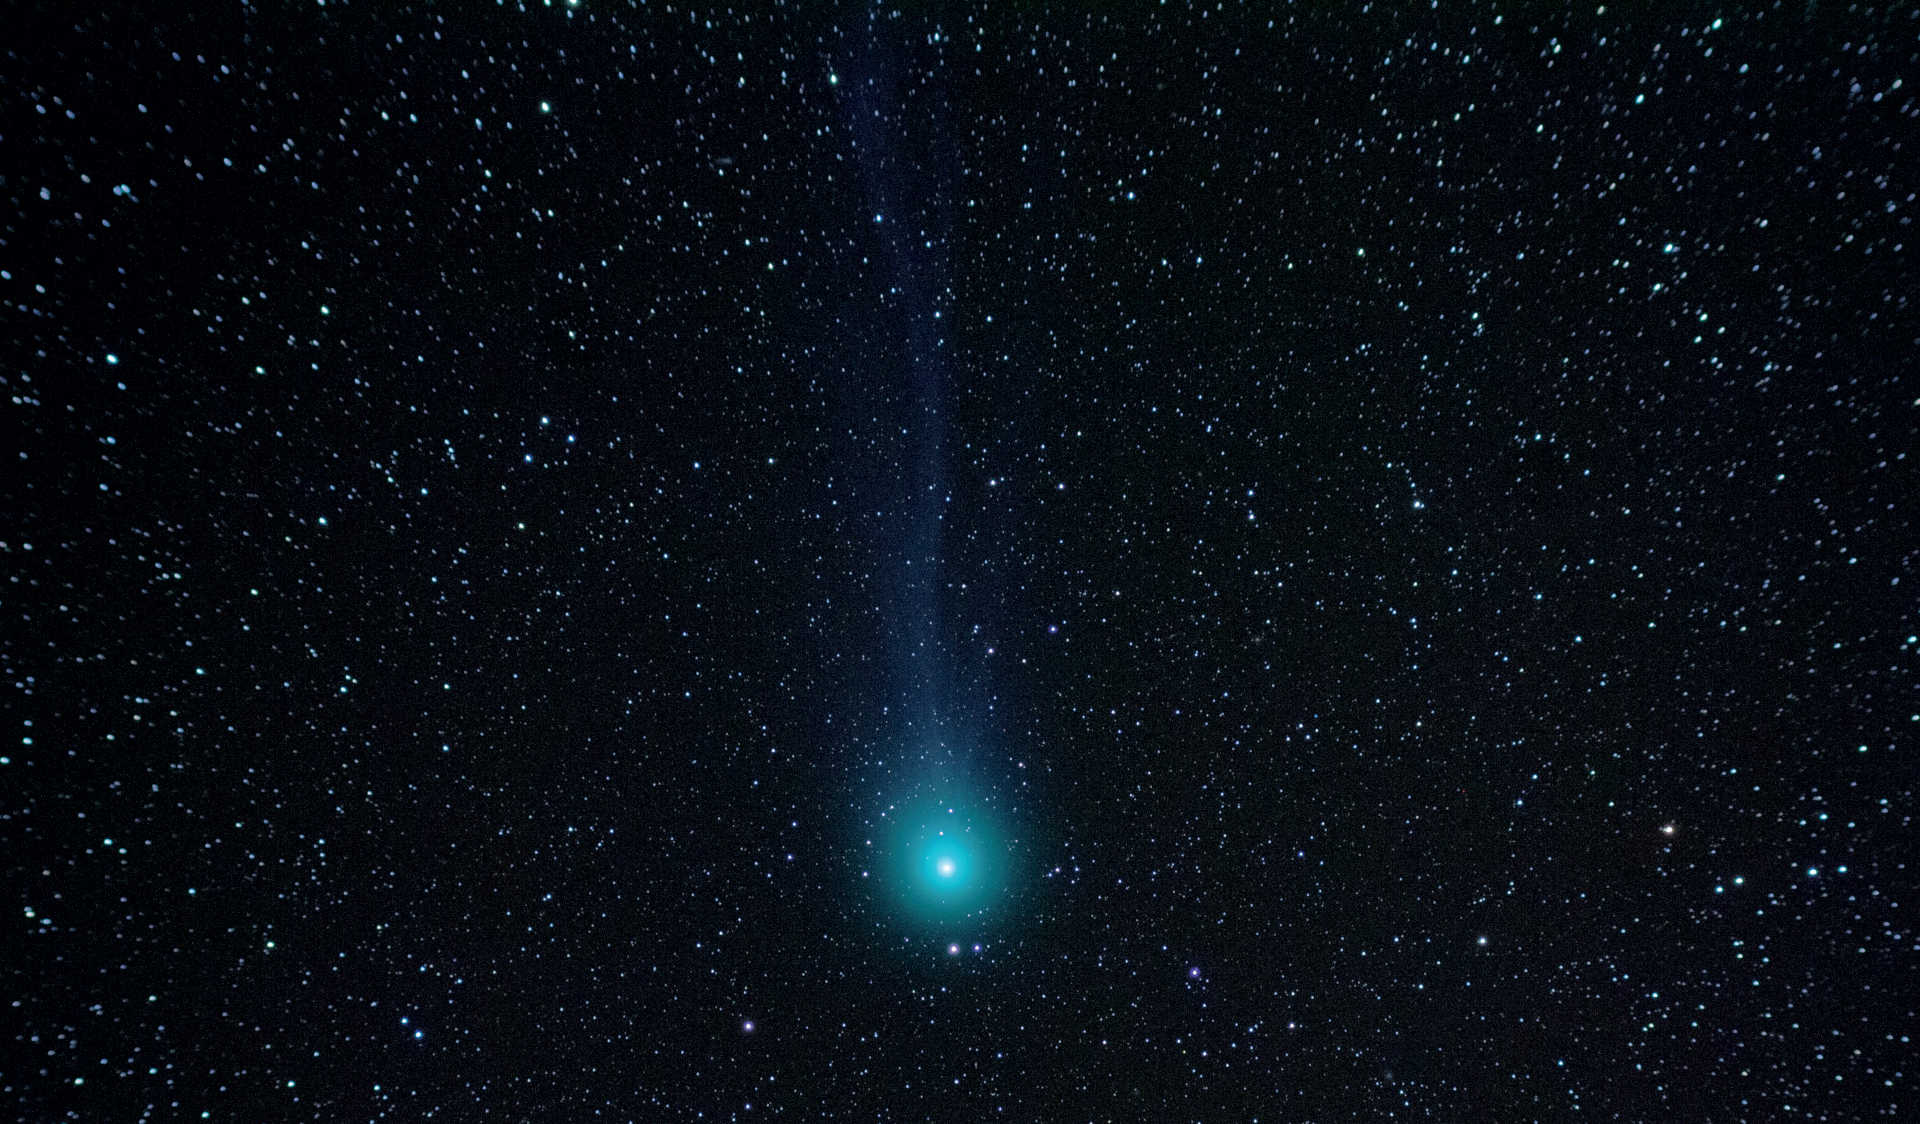 Rendre visible la queue d’une comète est un défi particulier de la photographie des comètes. Cette photo du 07/02/2015 montre la faible queue de la comète C/2014 Q2 (Lovejoy). La photo a été réalisée avec un reflex numérique Canon placé sur une Takahashi FS-60 (distance focale : 355 mm ; F/5,9). L’empilement d’images est composé de cinq prises de vues avec un temps d’exposition de 120 secondes chacune. U. Dittler